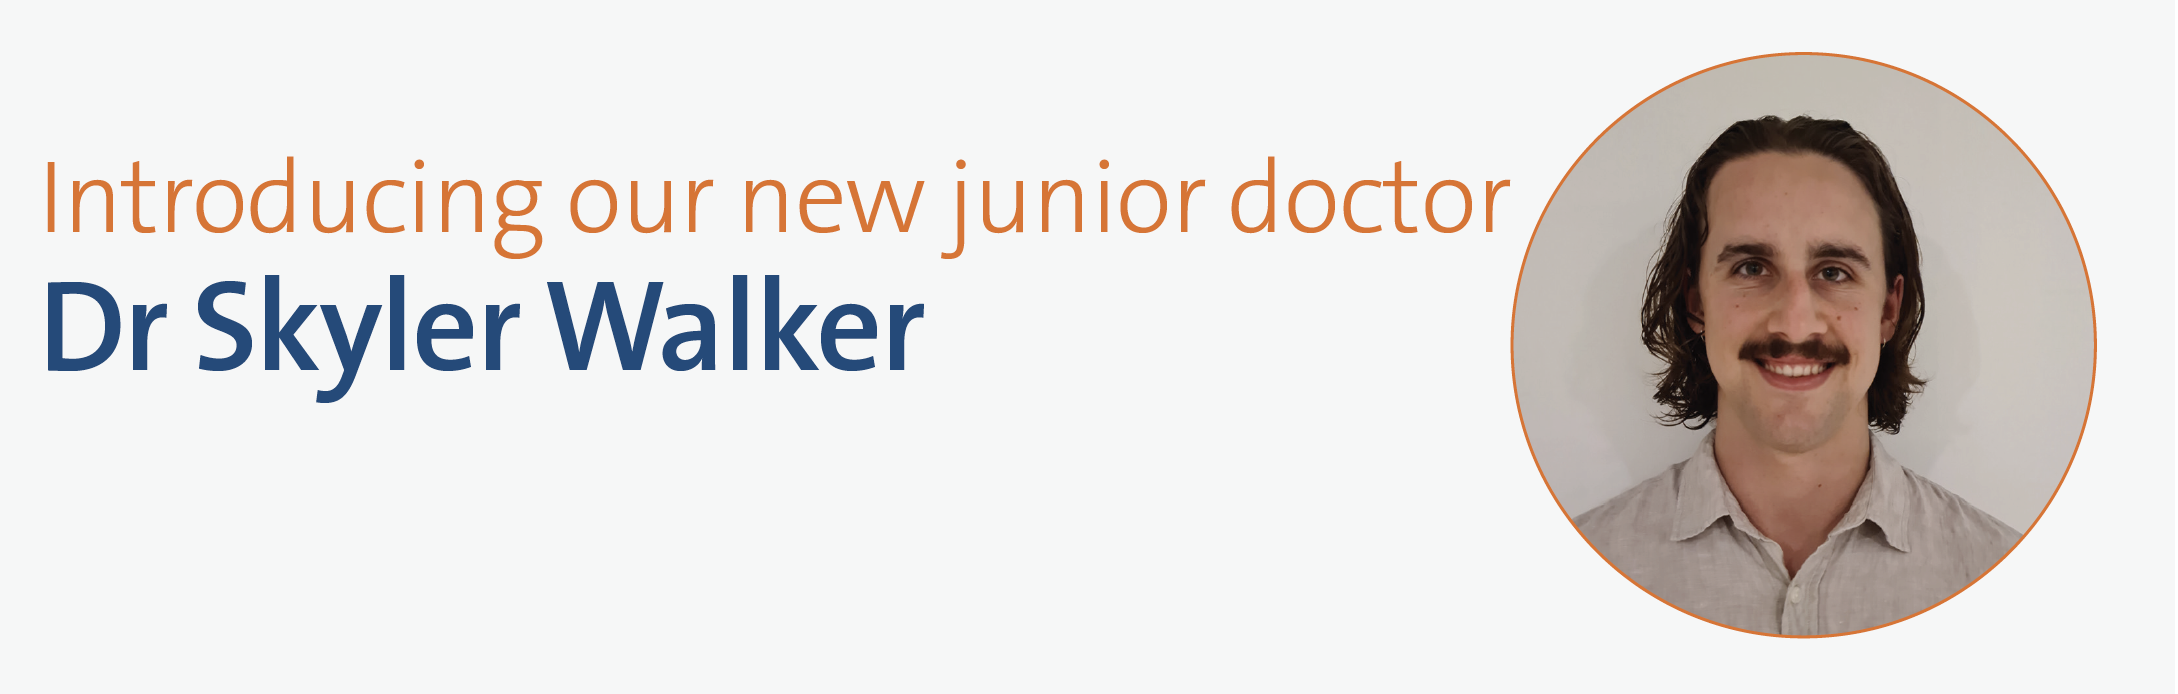 Dr Skyler Walker